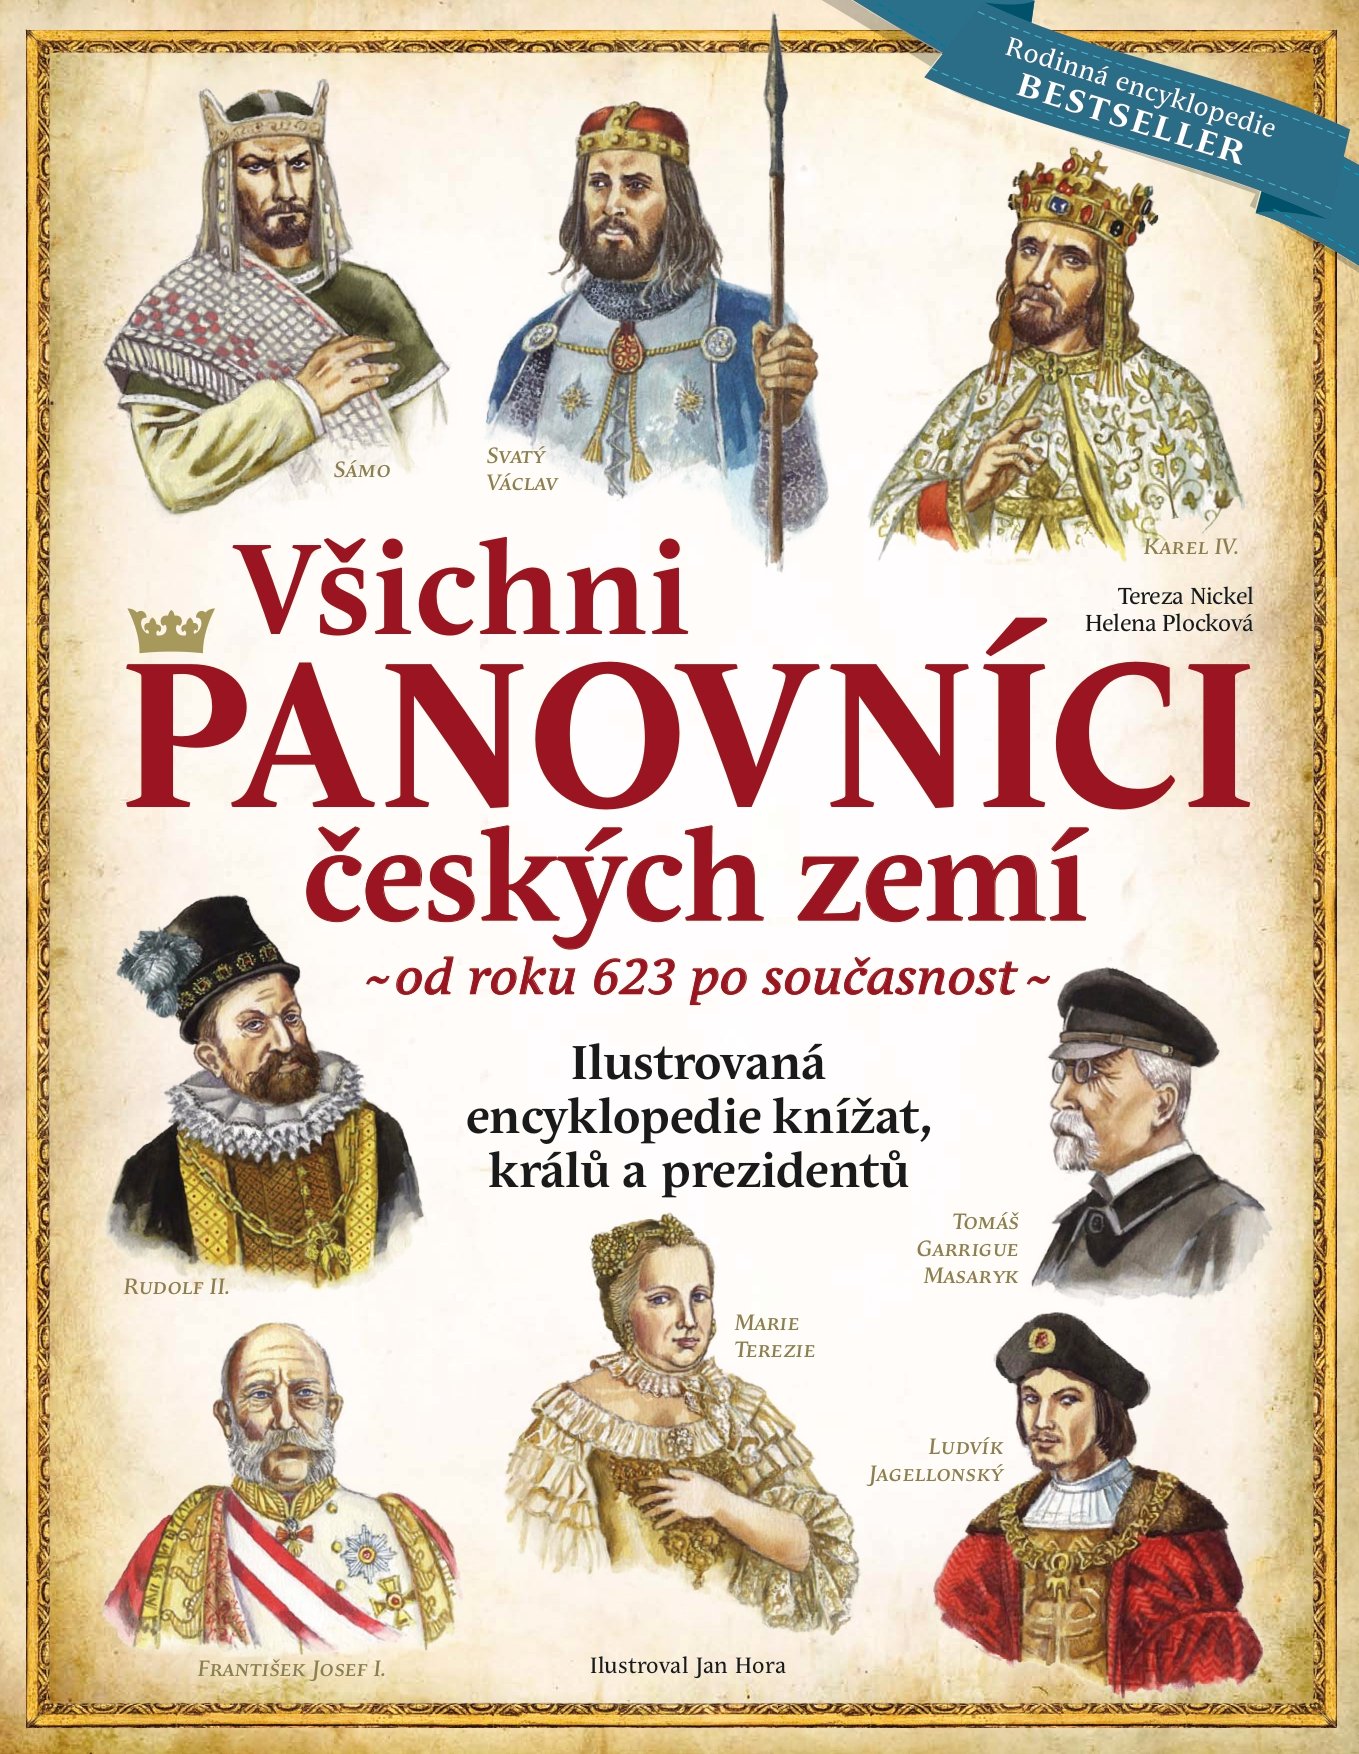 Všichni panovníci českých zemí od roku 623 po současnost - Ilustrovaná encyklopedie knížat, králů a prezidentů, 6. vydání - Tereza Nickel